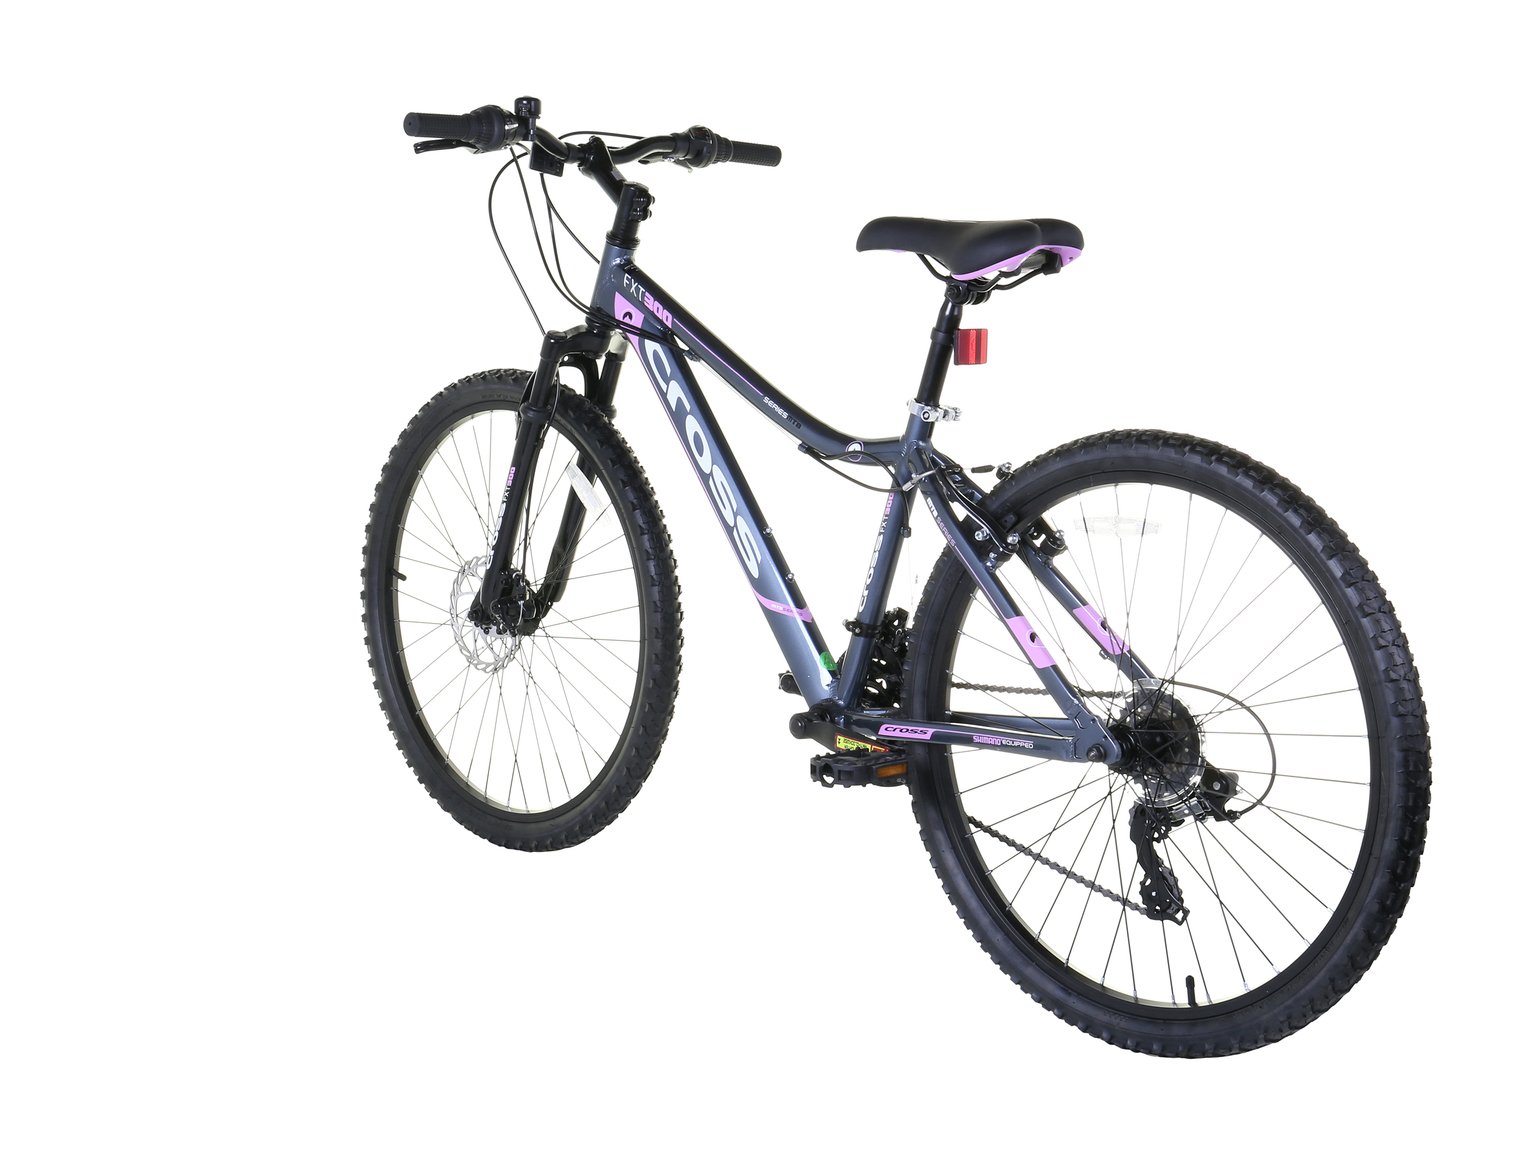 cross fxt300 26 inch wheel size womens mountain bike